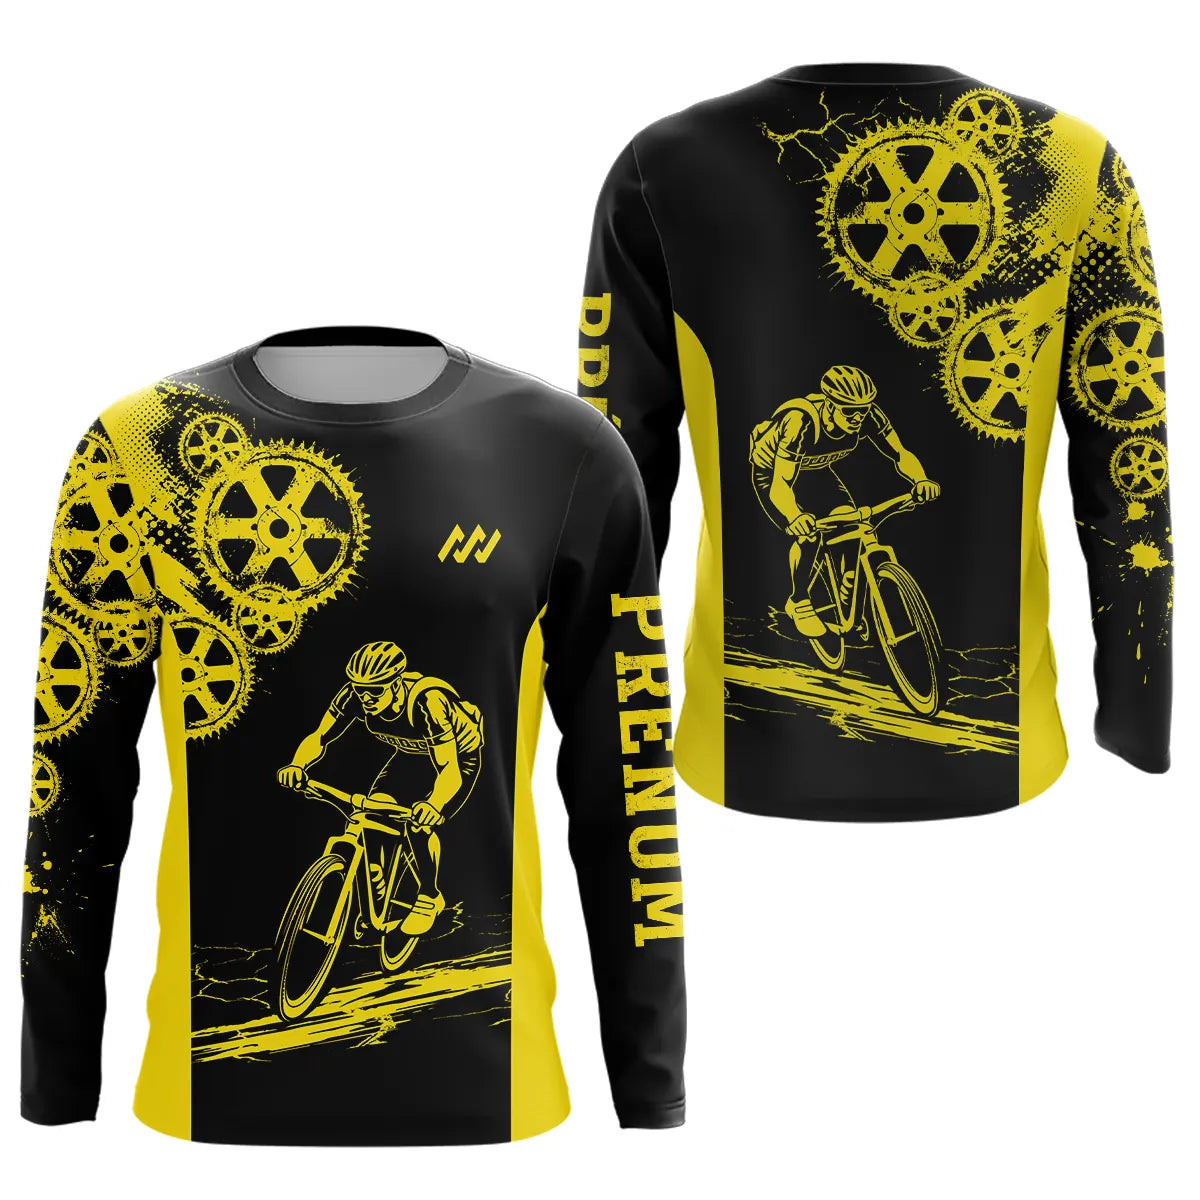 Maillot de Cyclisme Personnalisé Jaune et Noir - Performance et Style - A010624N27 T-shirt Anti UV Manches Longues Unisexe